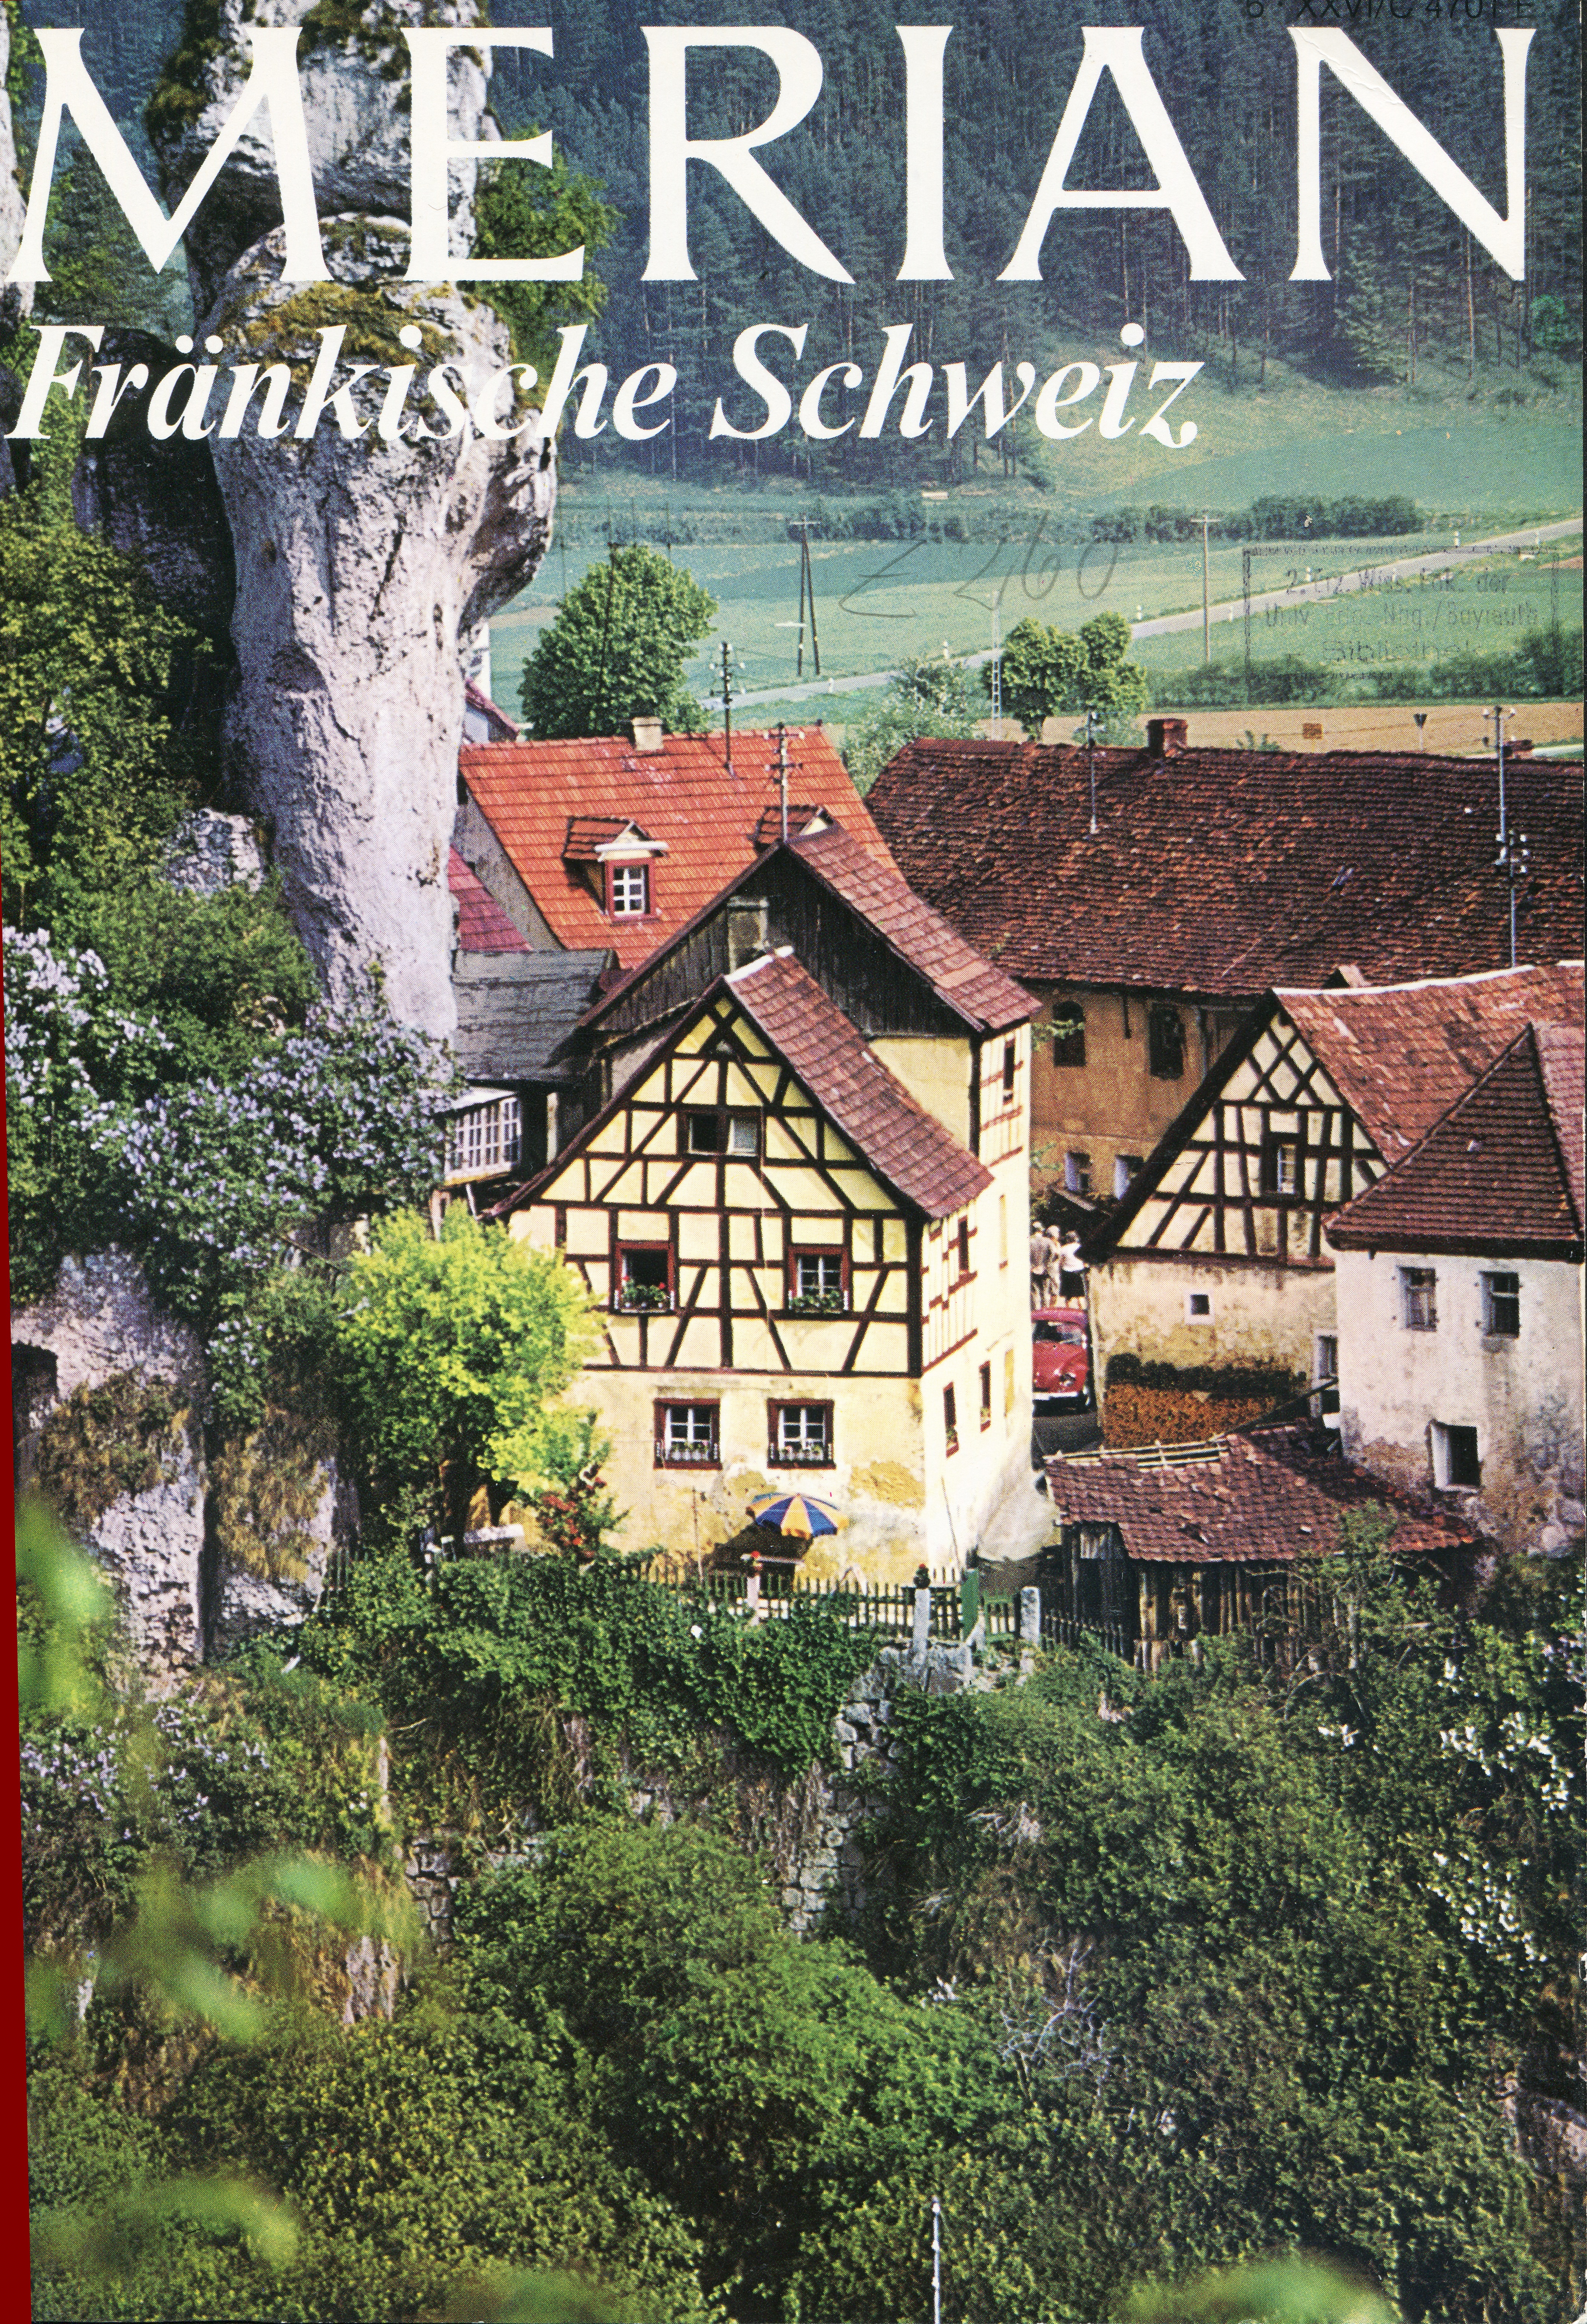 Abb. 3a: Titelbild des Merian-Heftes Fränkische Schweiz aus dem Jahr 1973